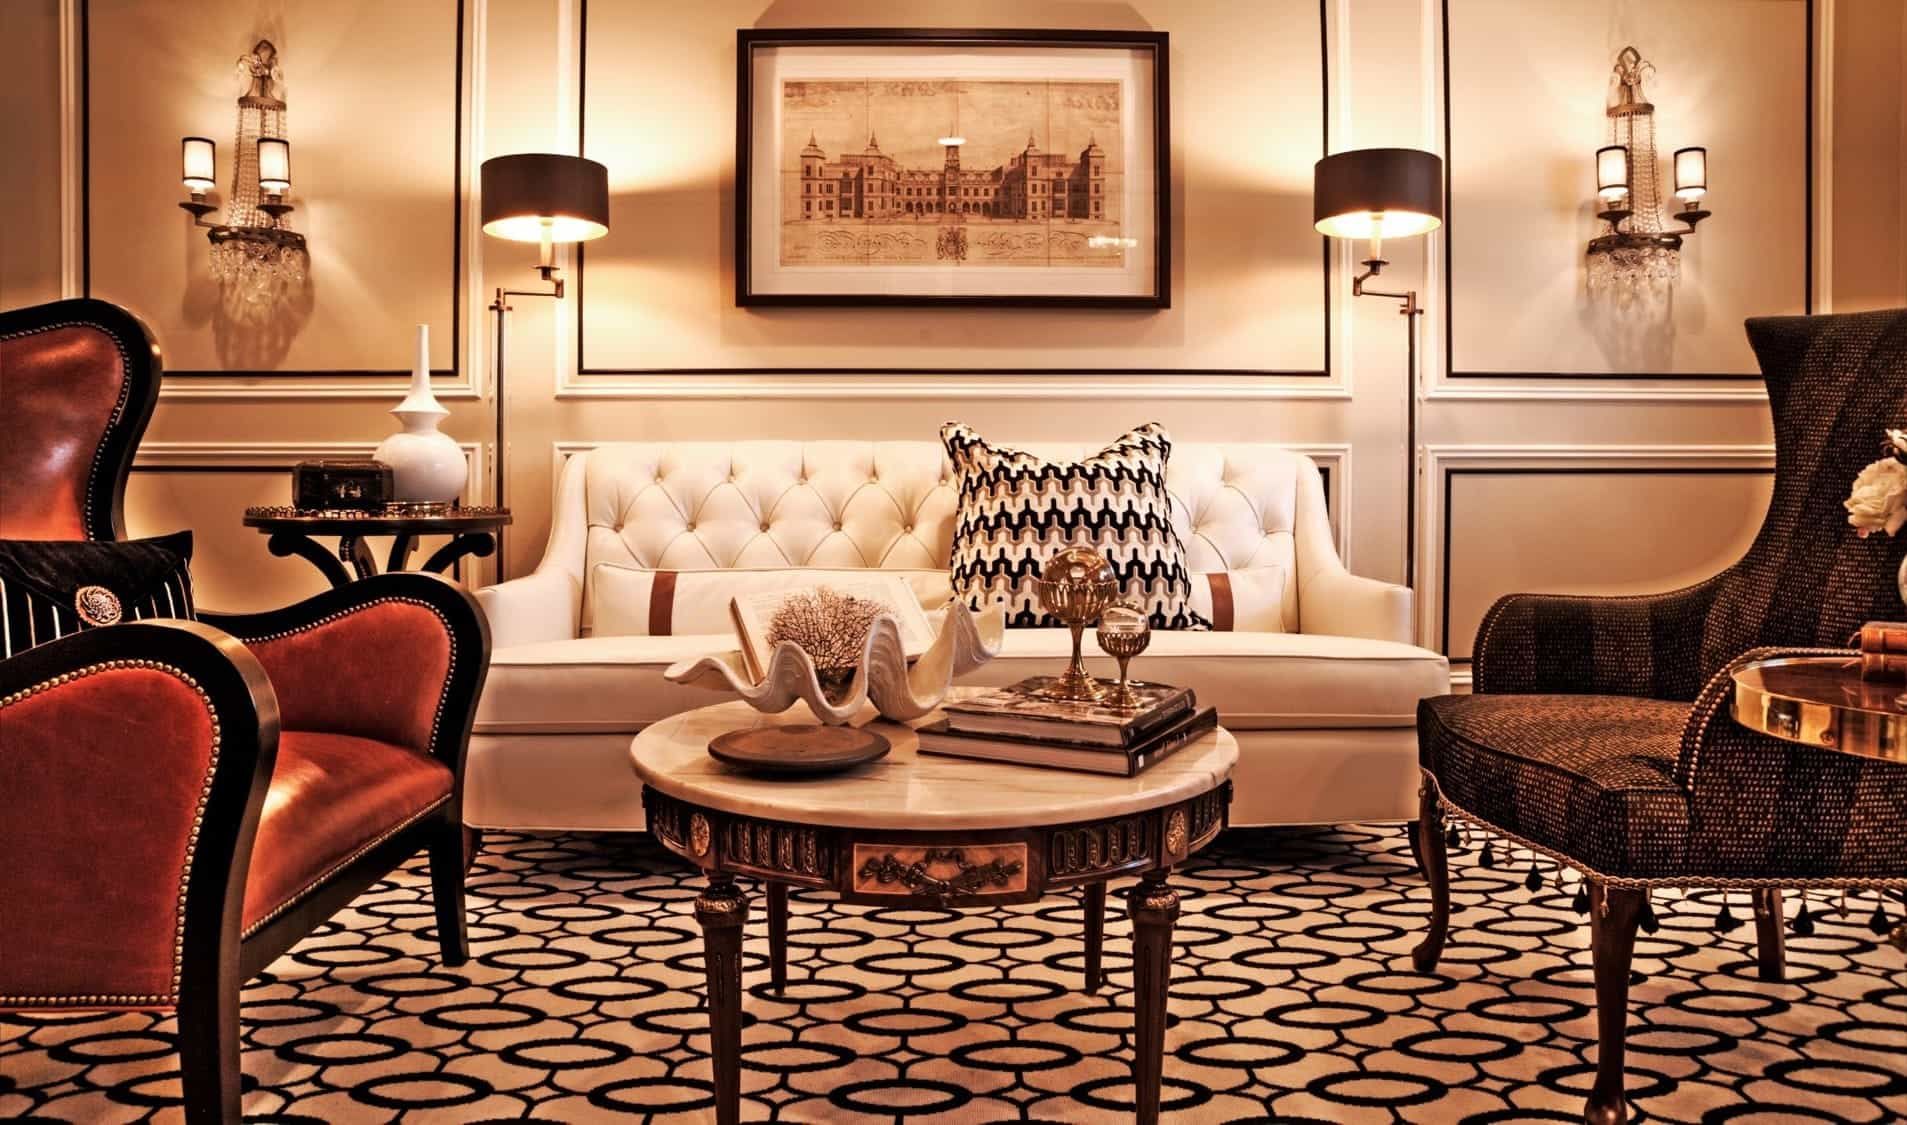 Royal Sofa Furniture For Elegant Living Room Design #23730 | Furniture